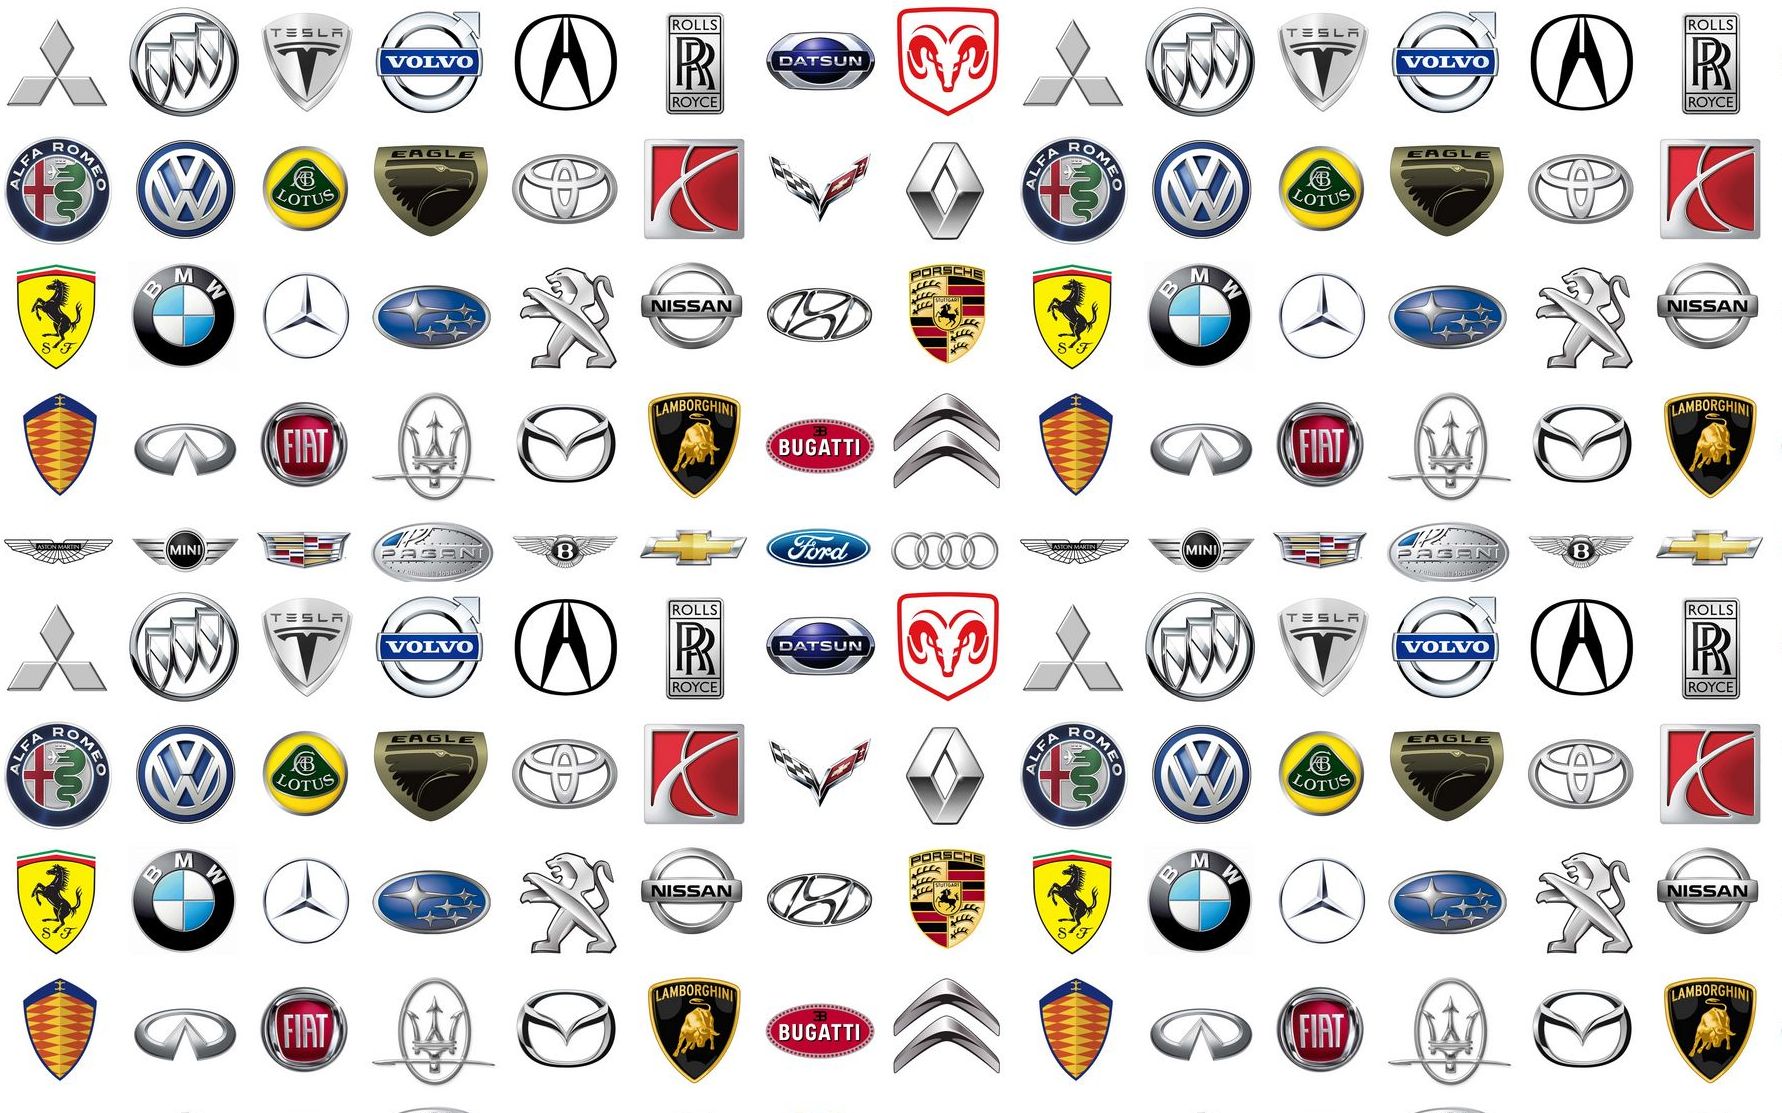 排行榜:汽配/车品大品牌,米其林与固特异分别位居一二